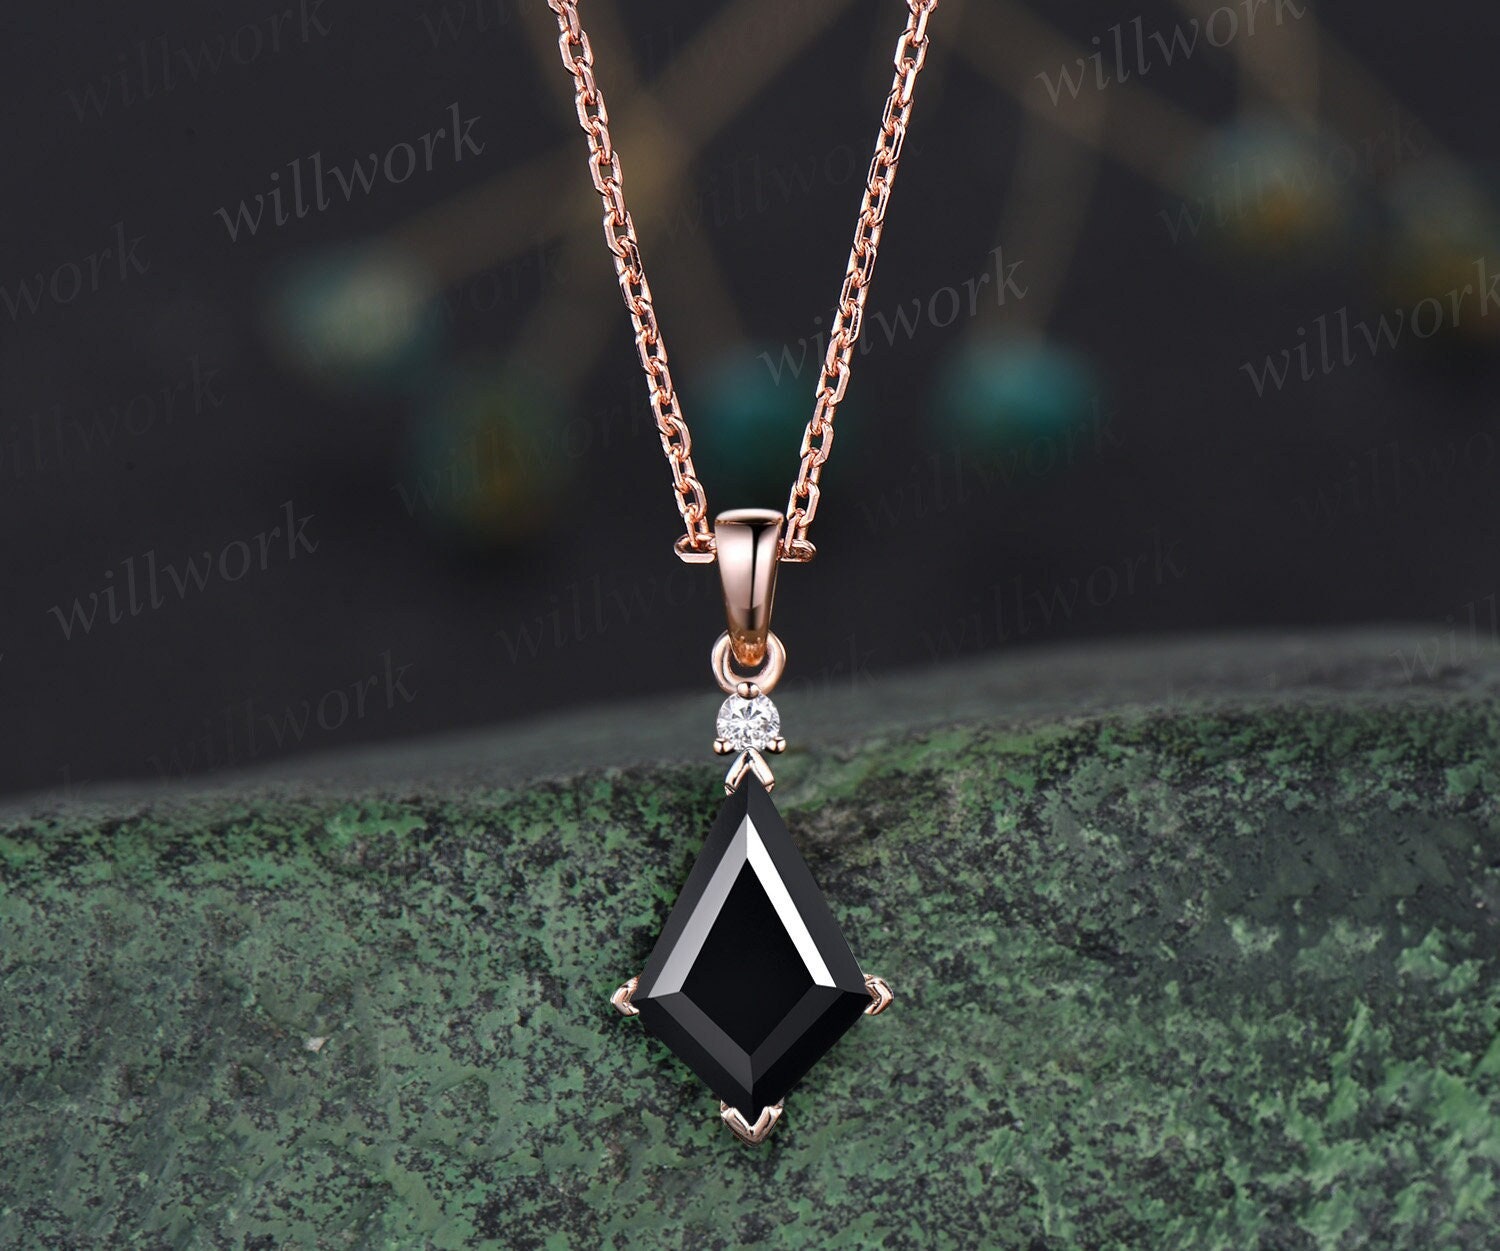 Buy Black Onyx Necklace 14k Gold Onyx Necklace Black Stone Necklace Black Onyx  Pendant Online in India - Etsy